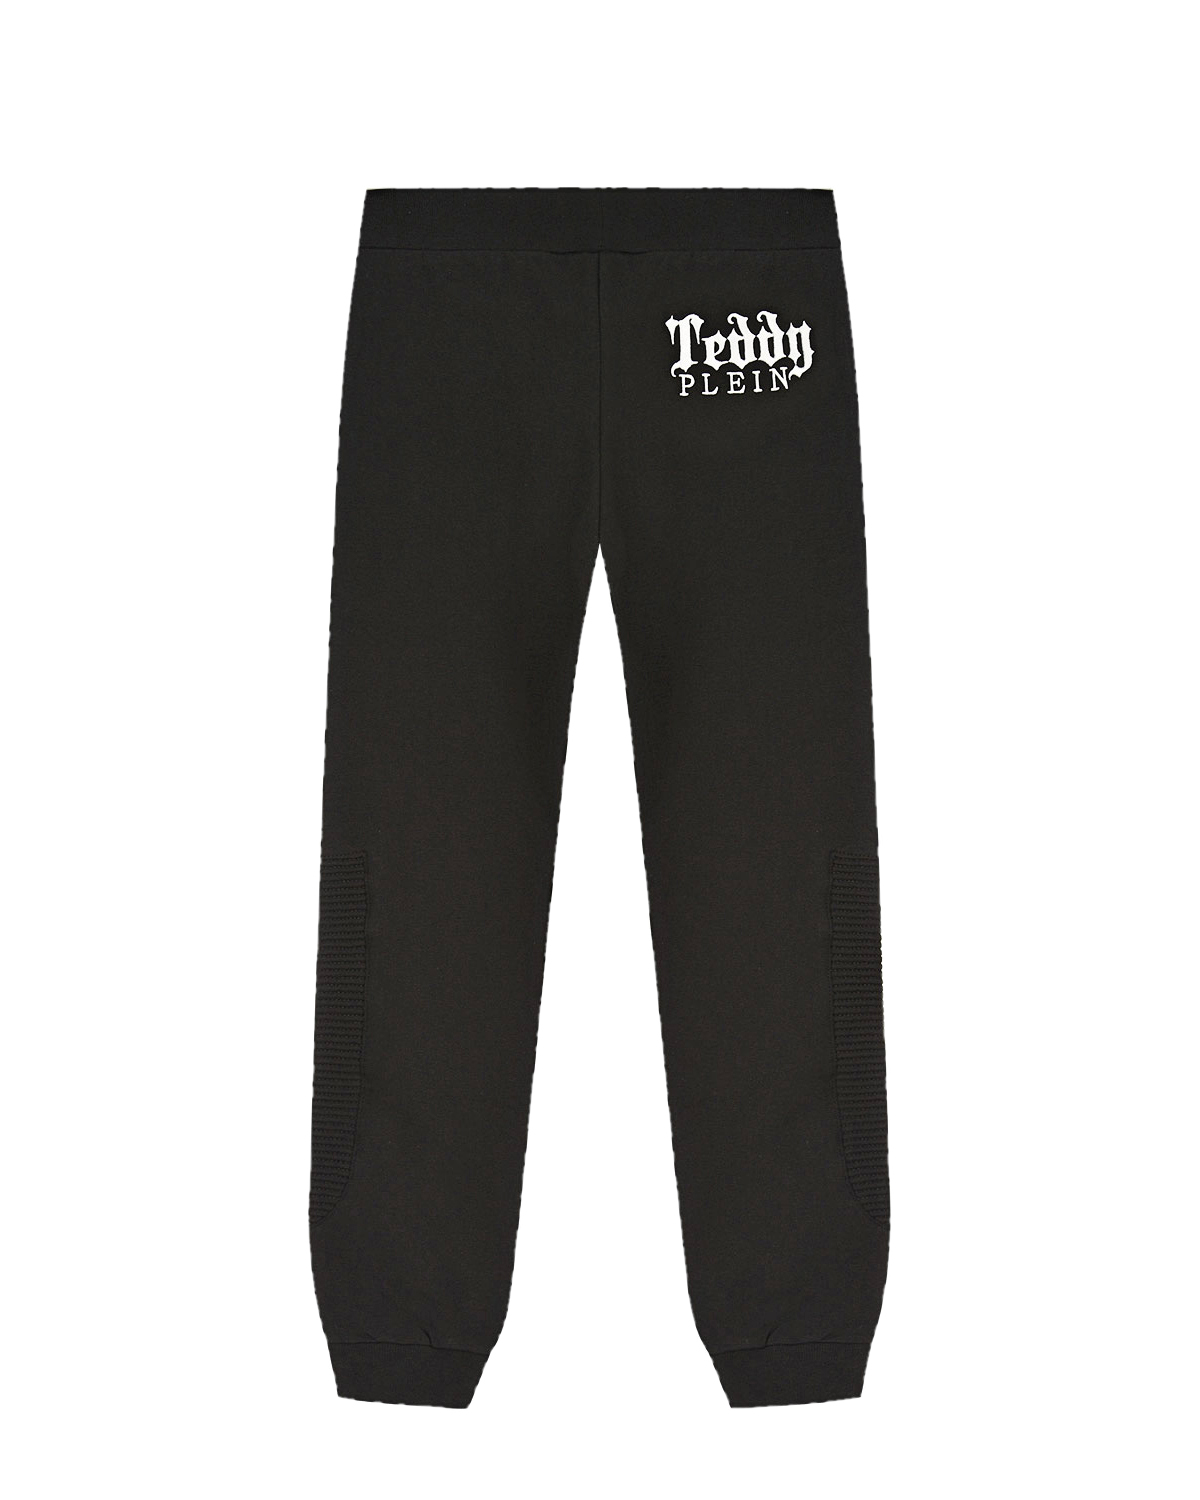 Черные спортивные брюки с принтом "Teddy" Philipp Plein детские, размер 140, цвет черный - фото 2